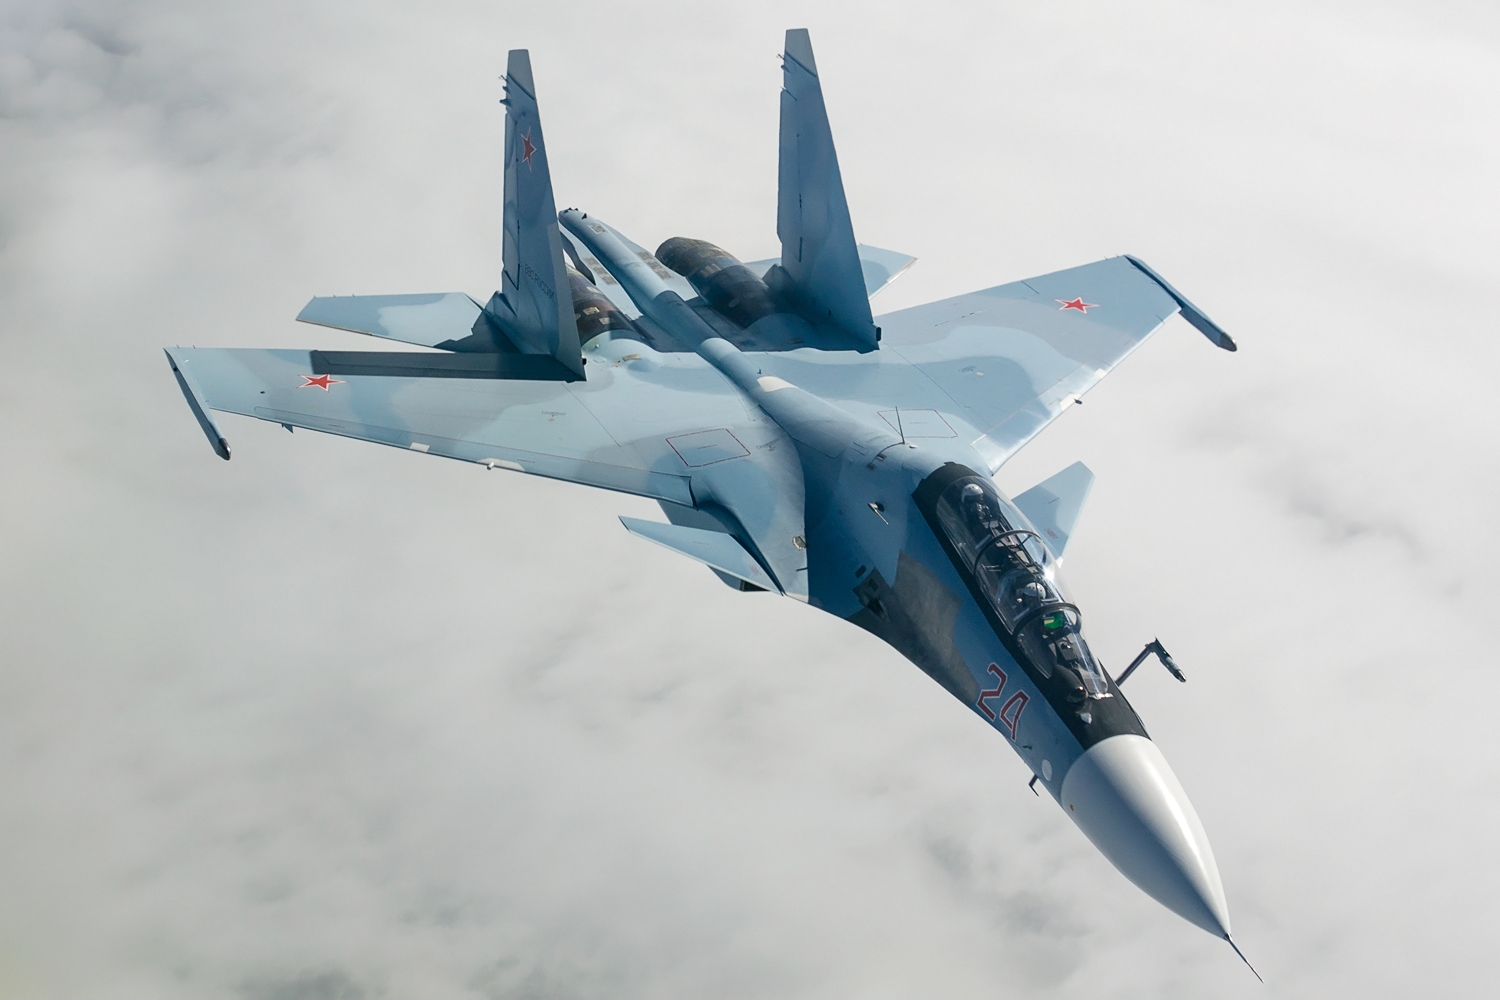 Αμερικανικό MQ-9A Reaper θέλησε να «δοκιμάσει την τύχη του» στην Μαύρη Θάλασσα – Ρωσικό Su-30 το έκανε να γυρίσει στην βάση του